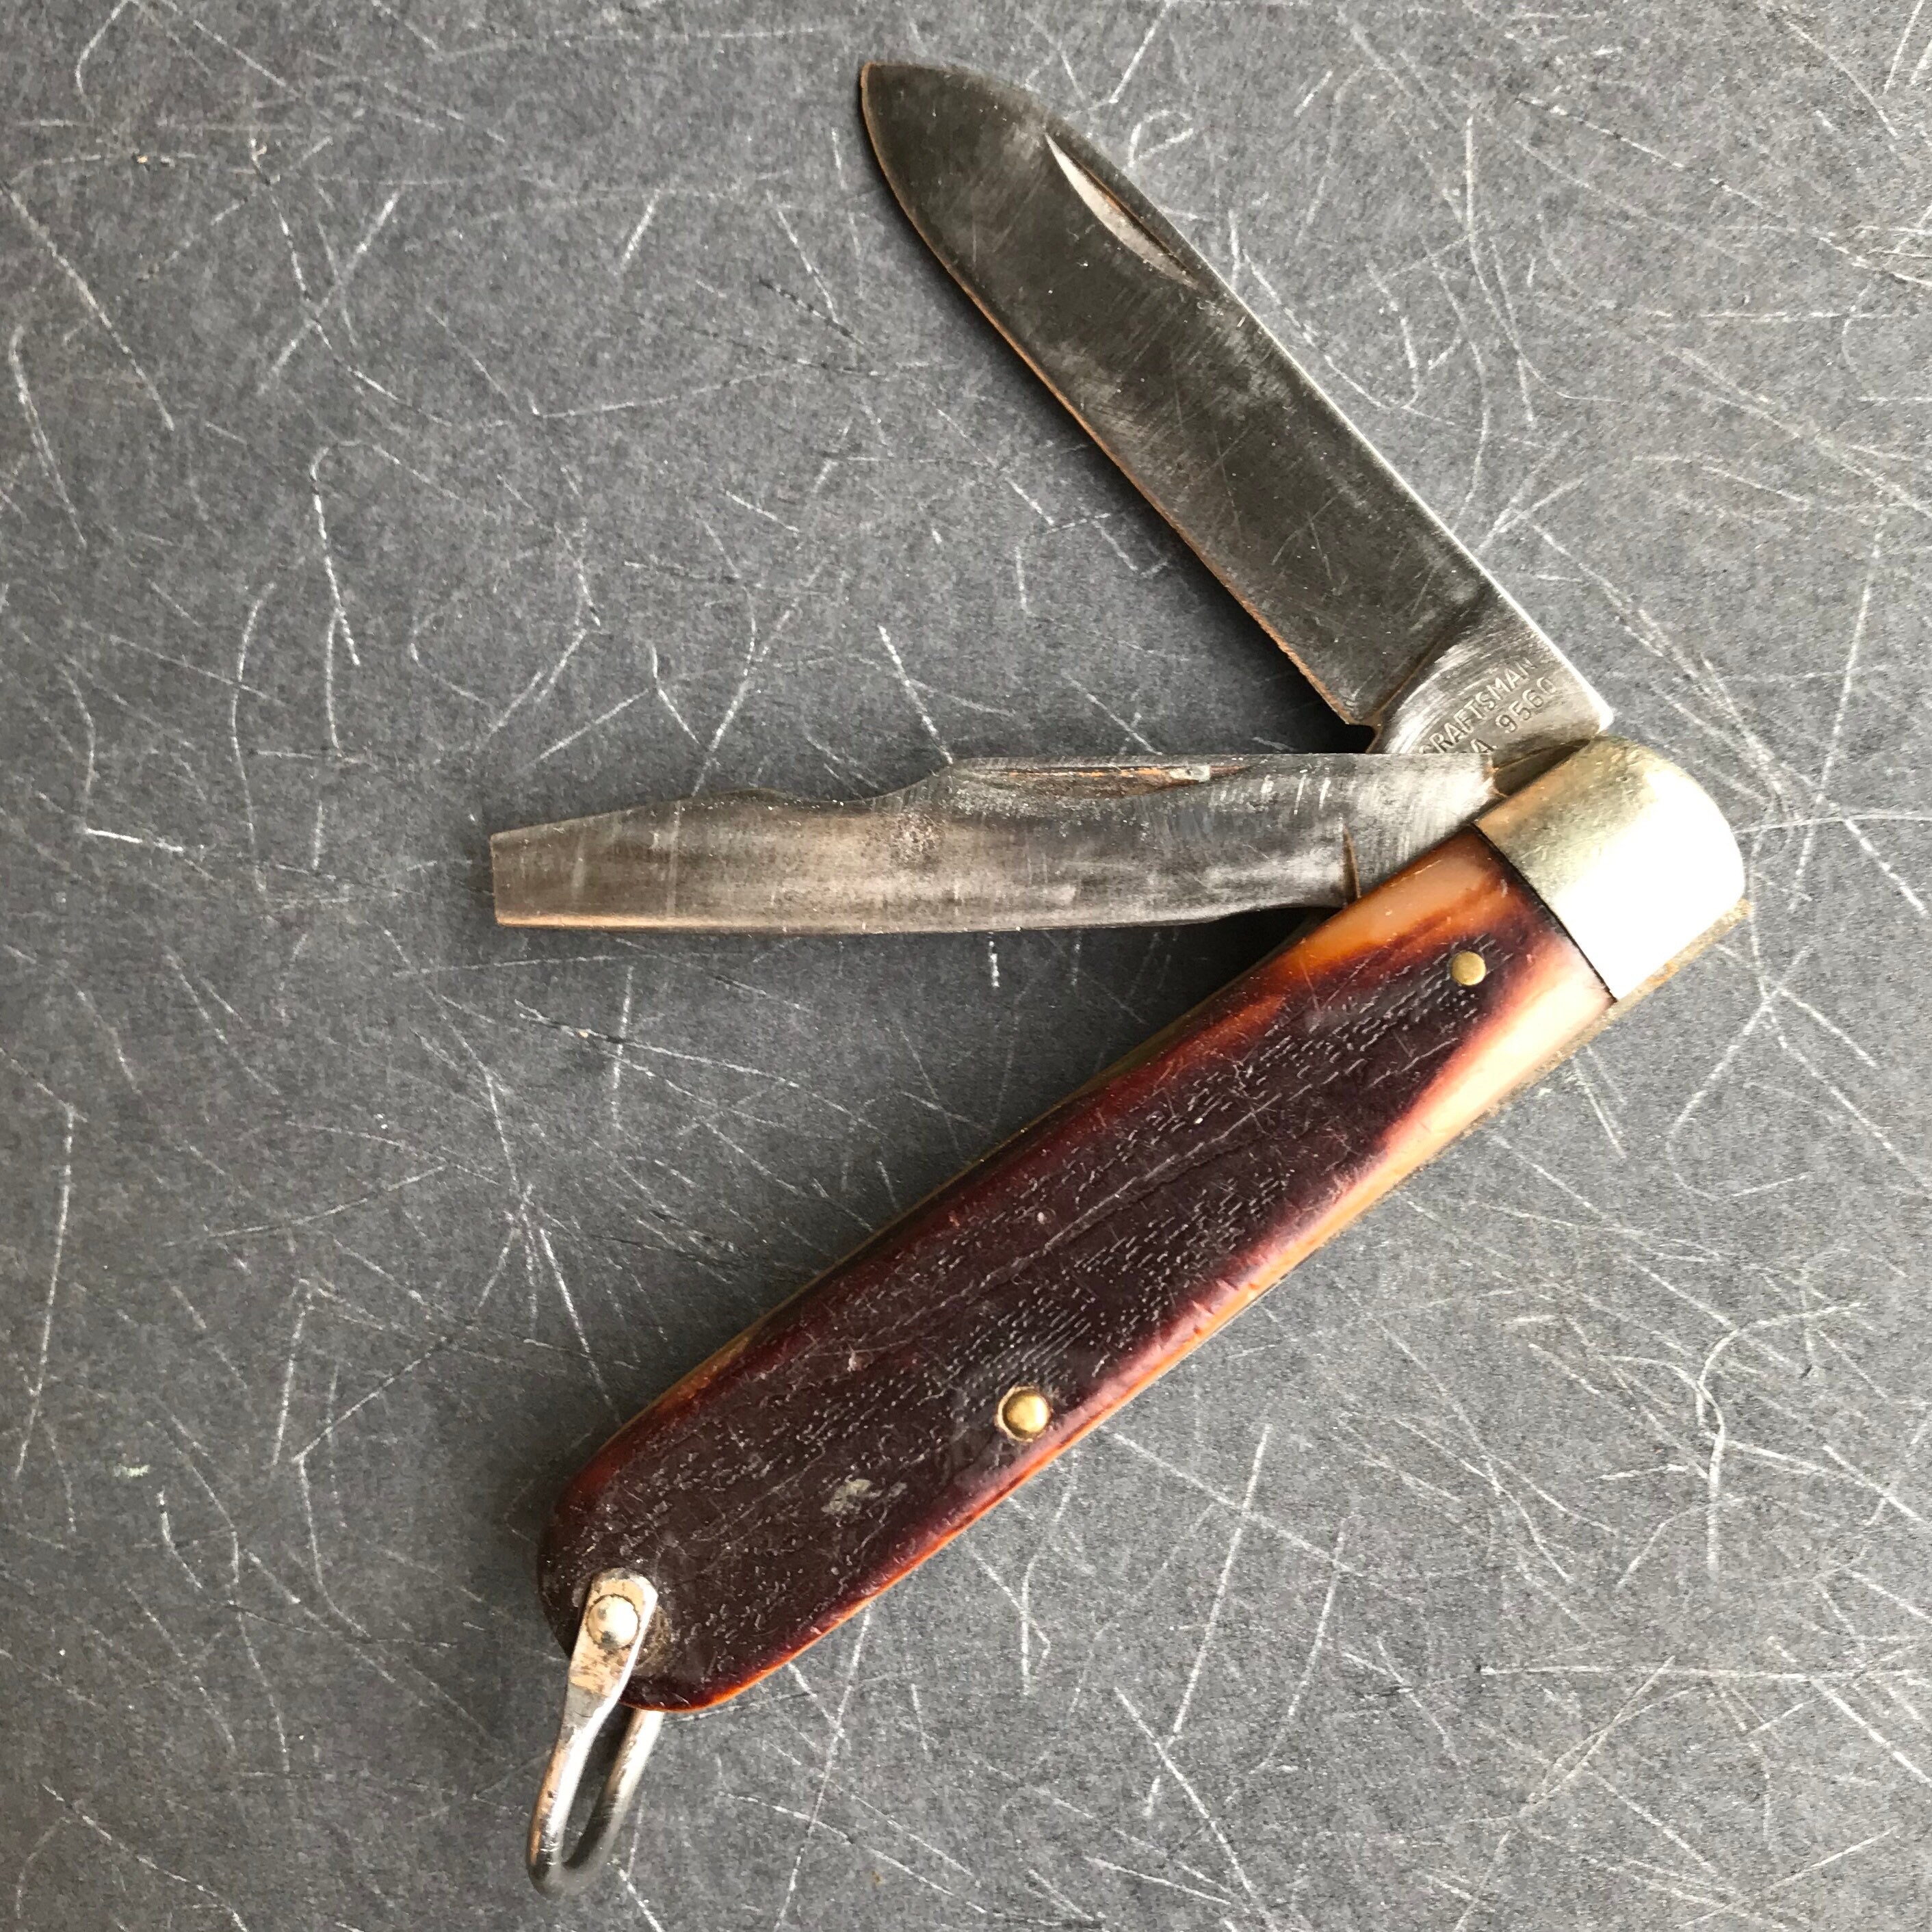 Craftsman Pocket Knife for sale | Only 4 left at -70%